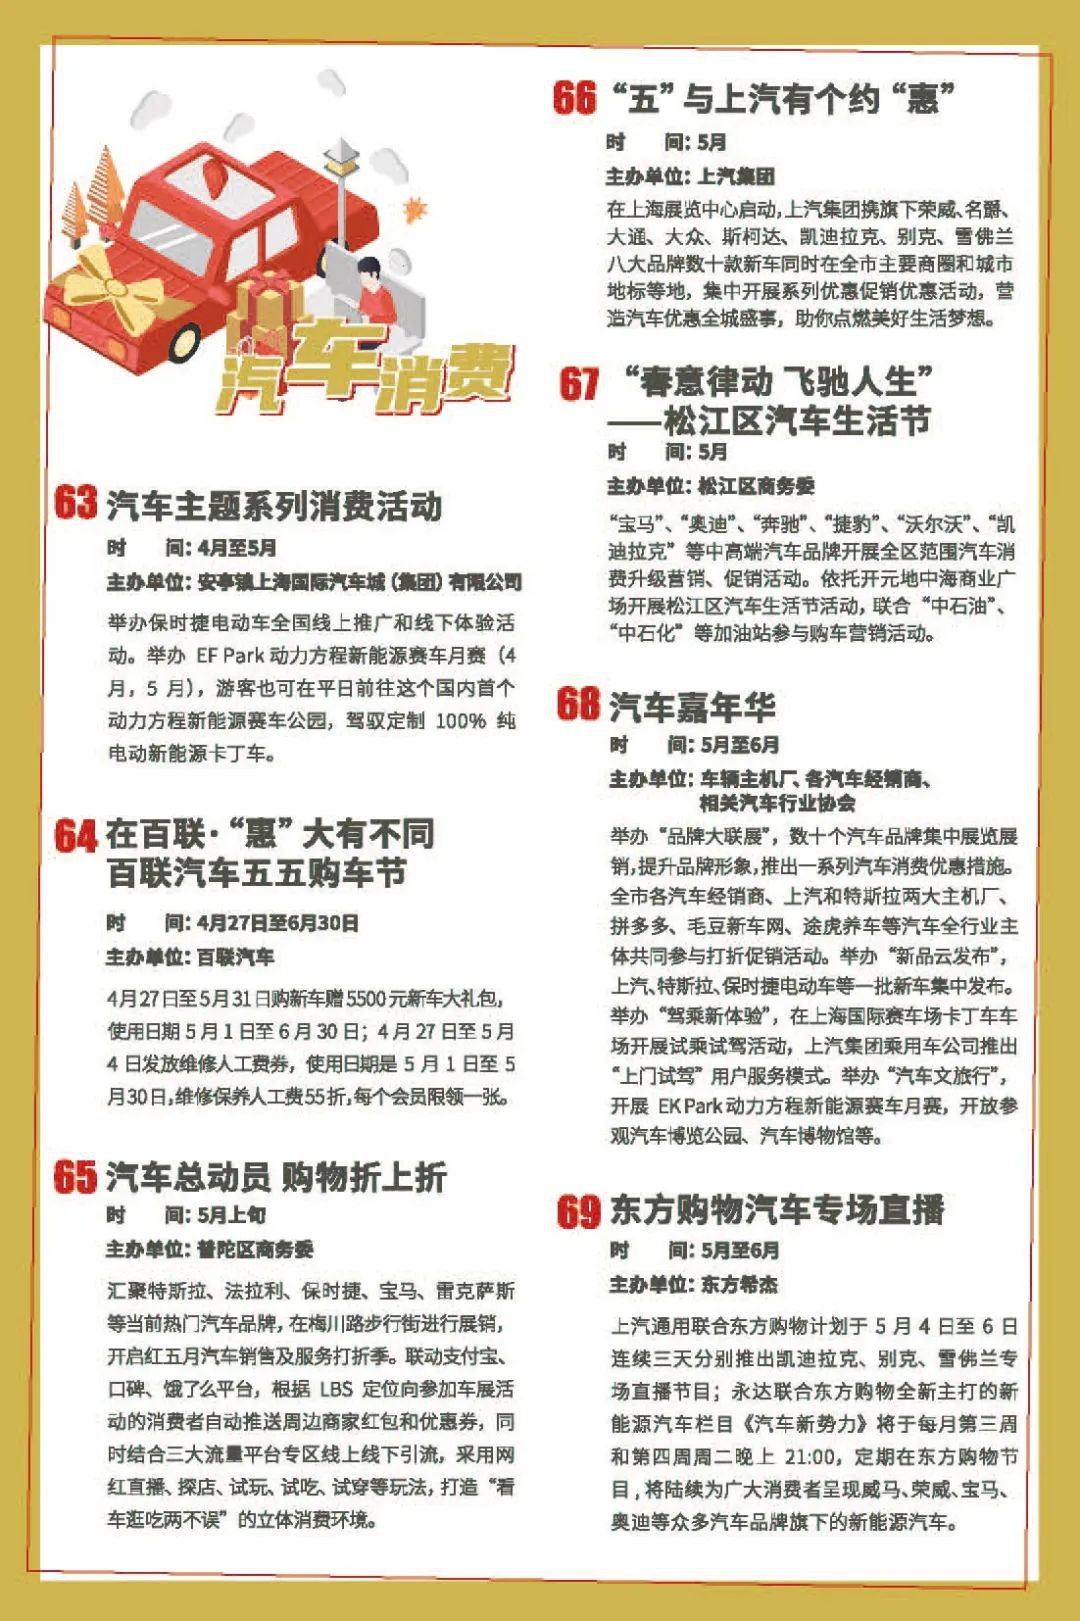 2020上海五五购物节活动安排一览表